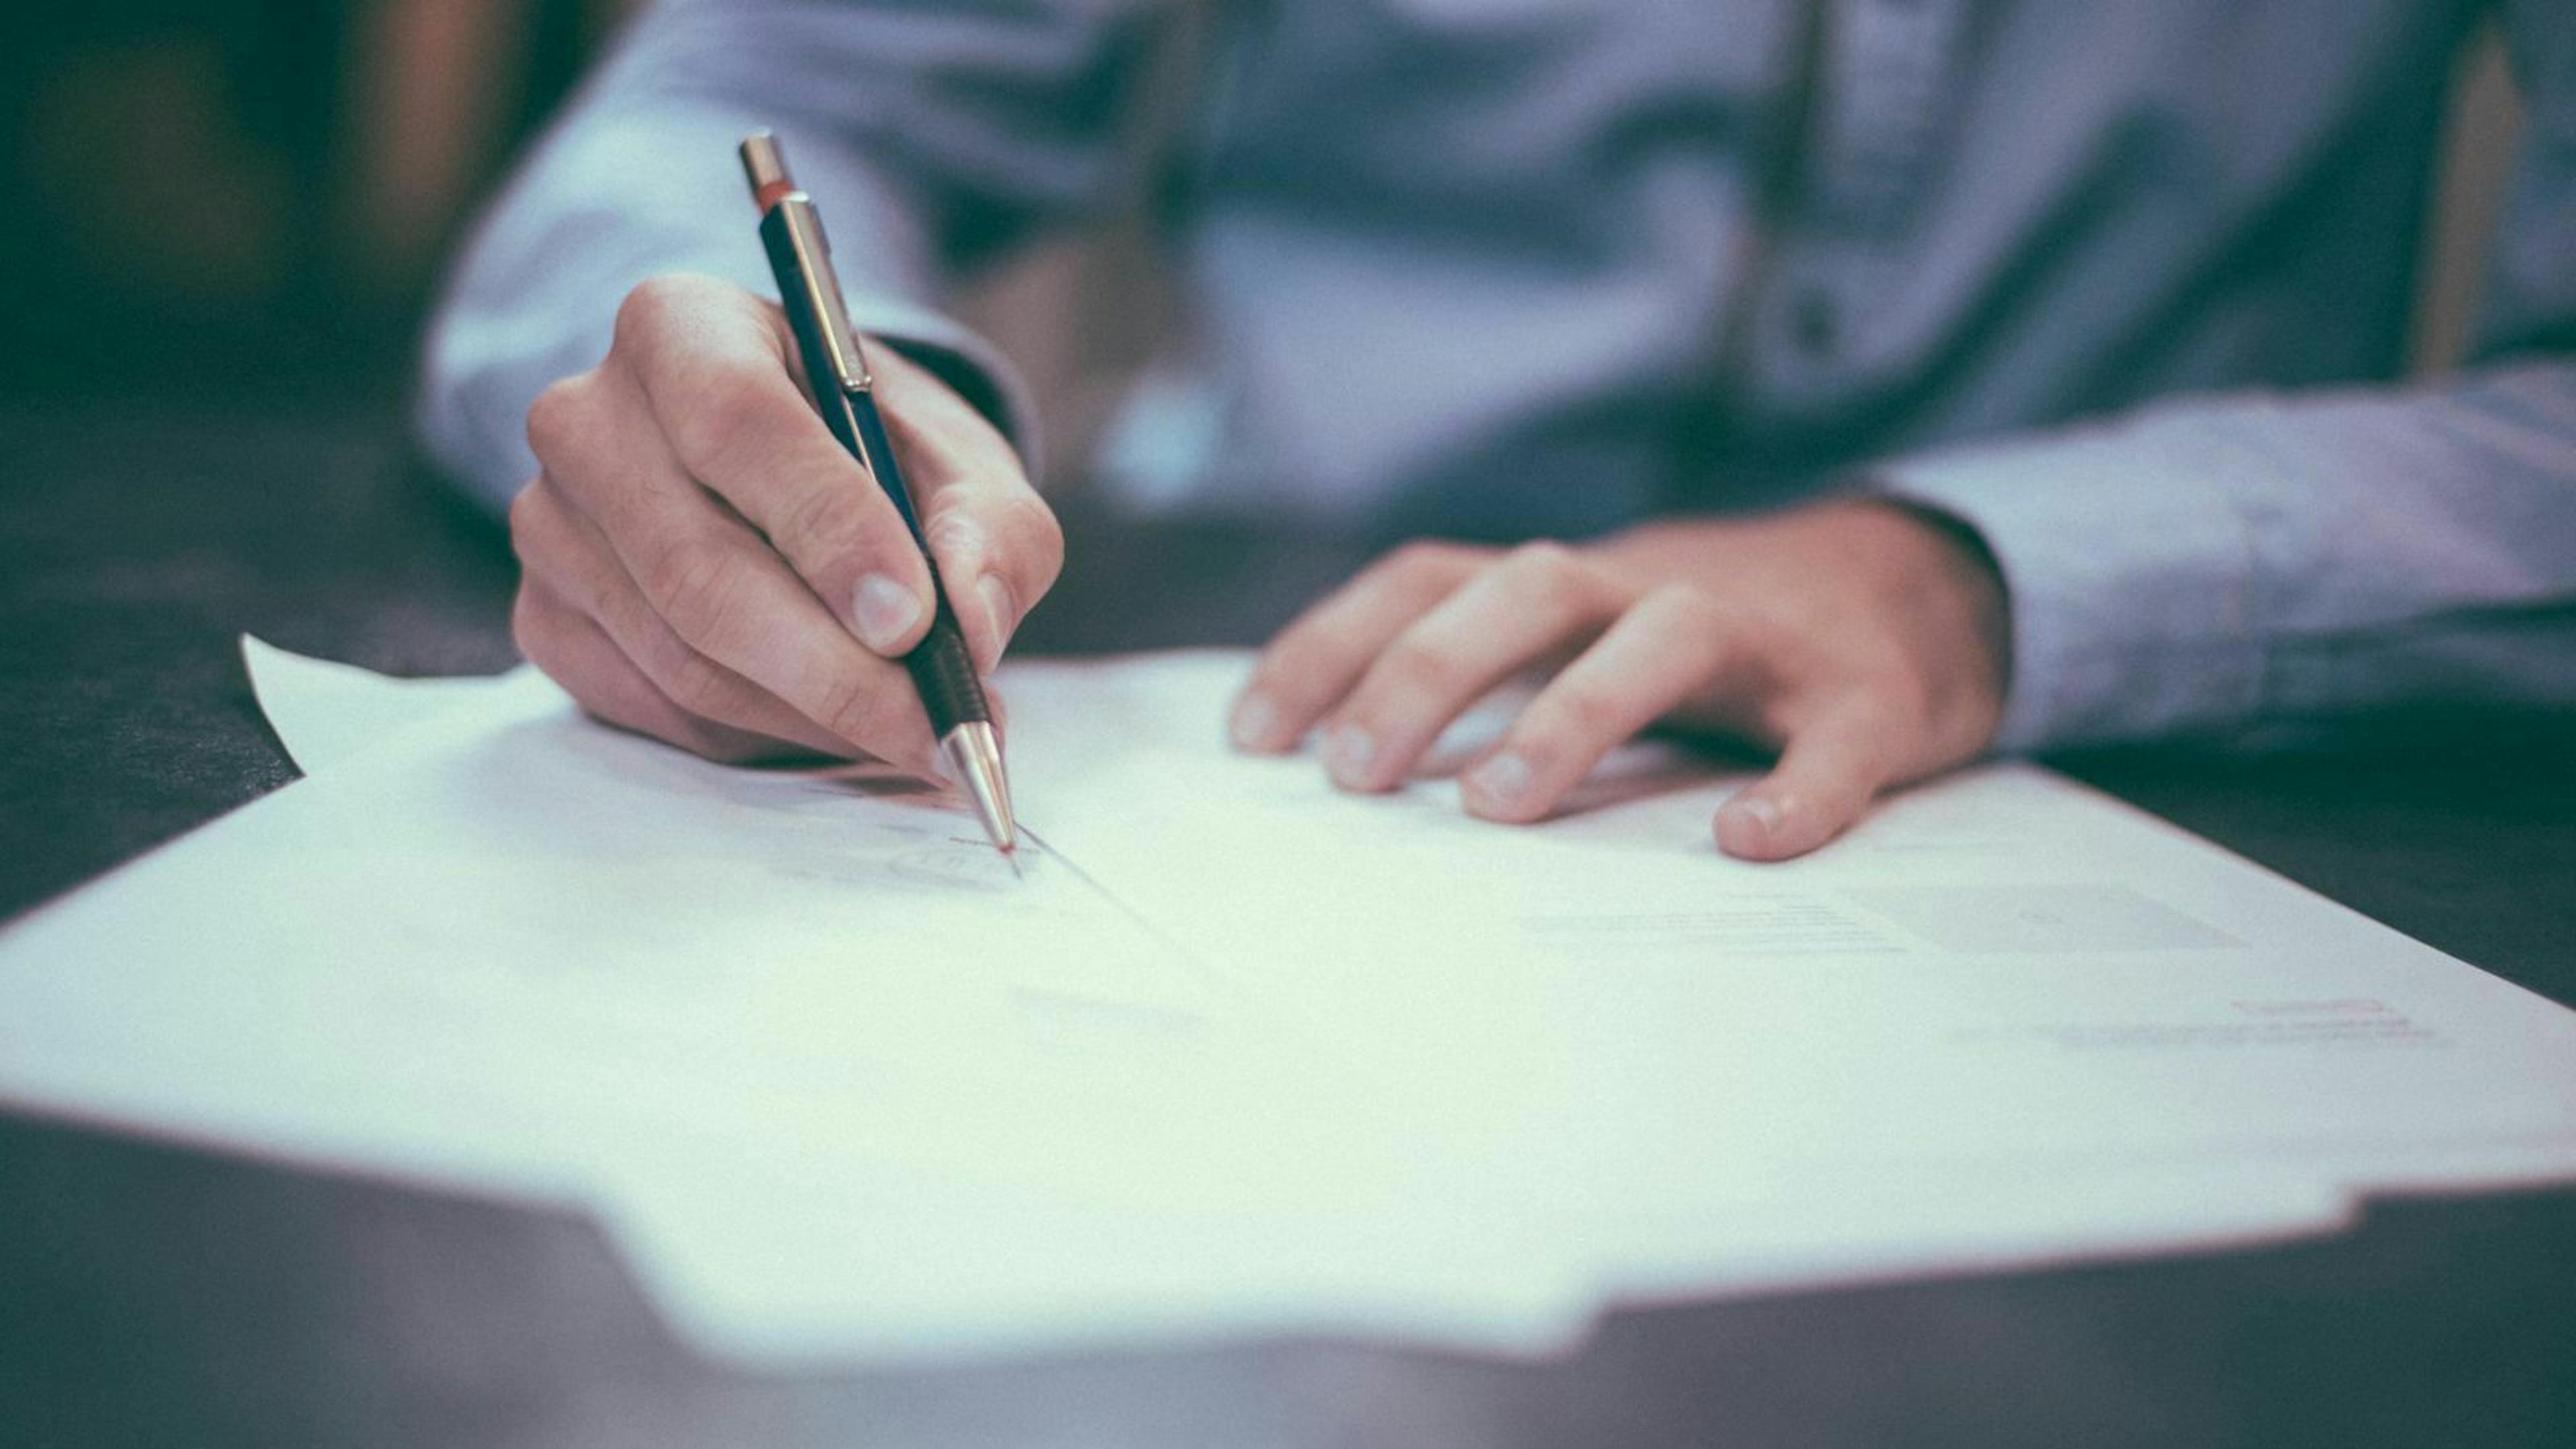 Ein Mann in einem hellblauen Hemd sitzt an einem Tisch und unterzeichnet einen Vertrag